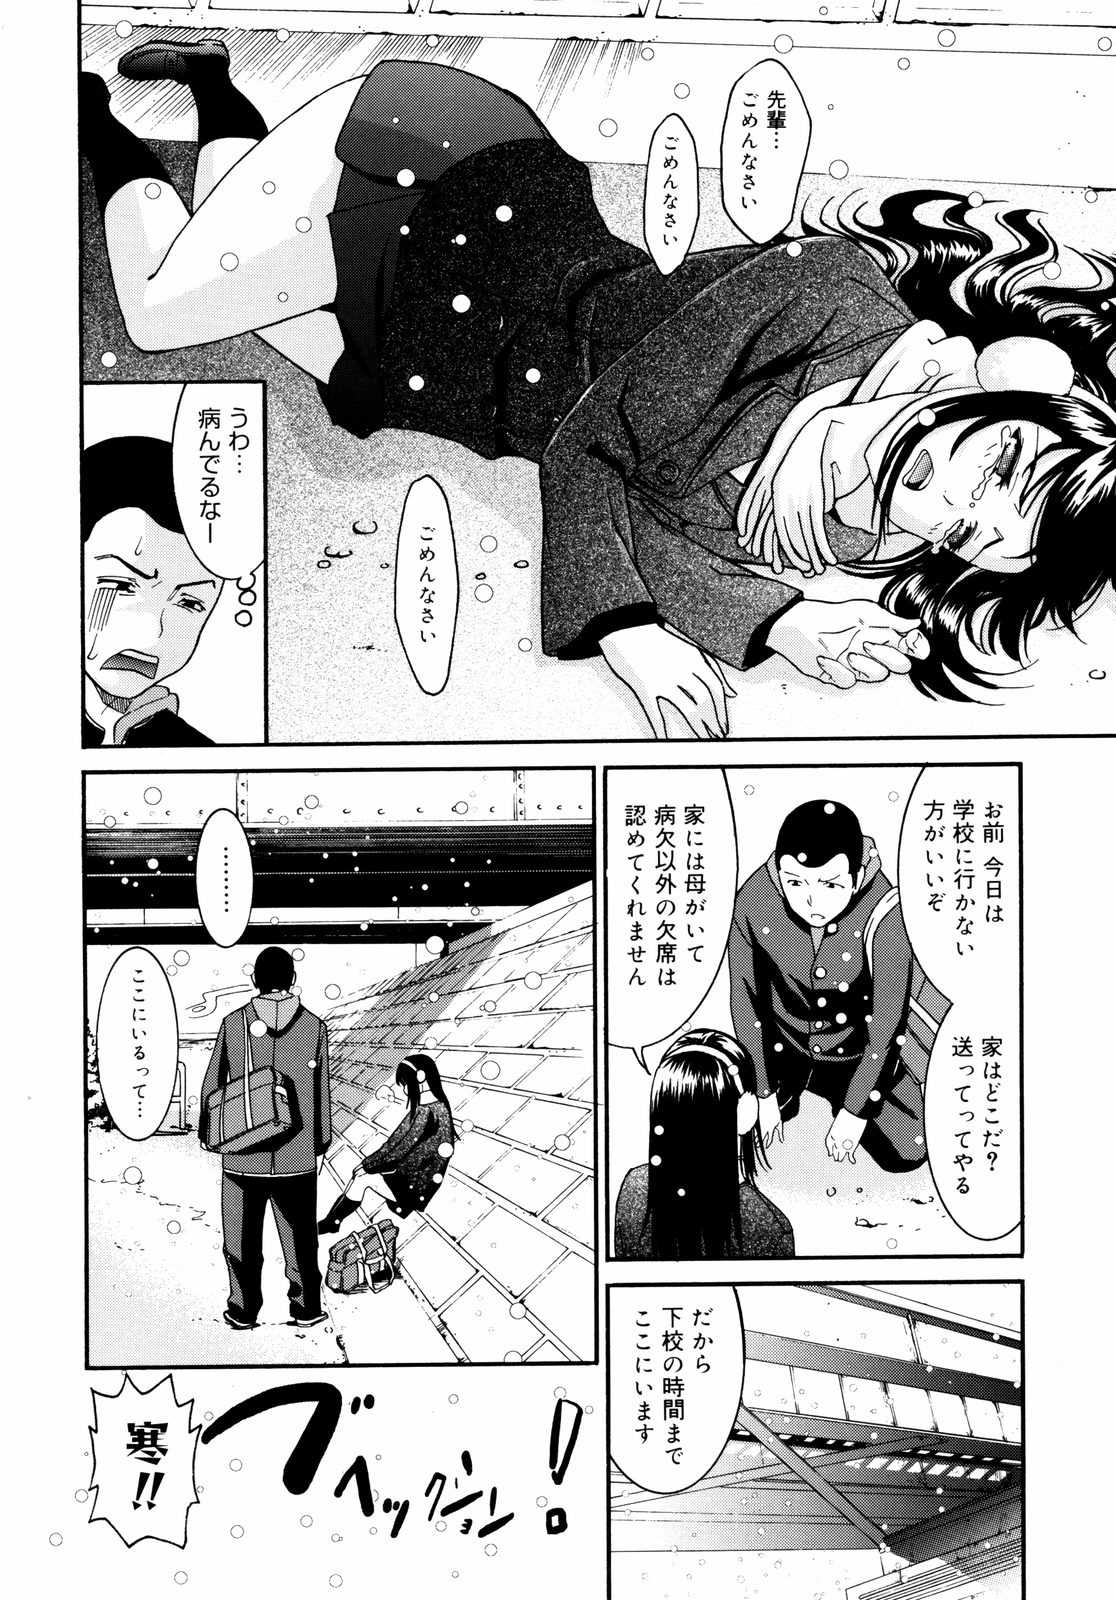 [Enomoto Heights] Yanagida-kun to Mizuno-san Vol. 2 